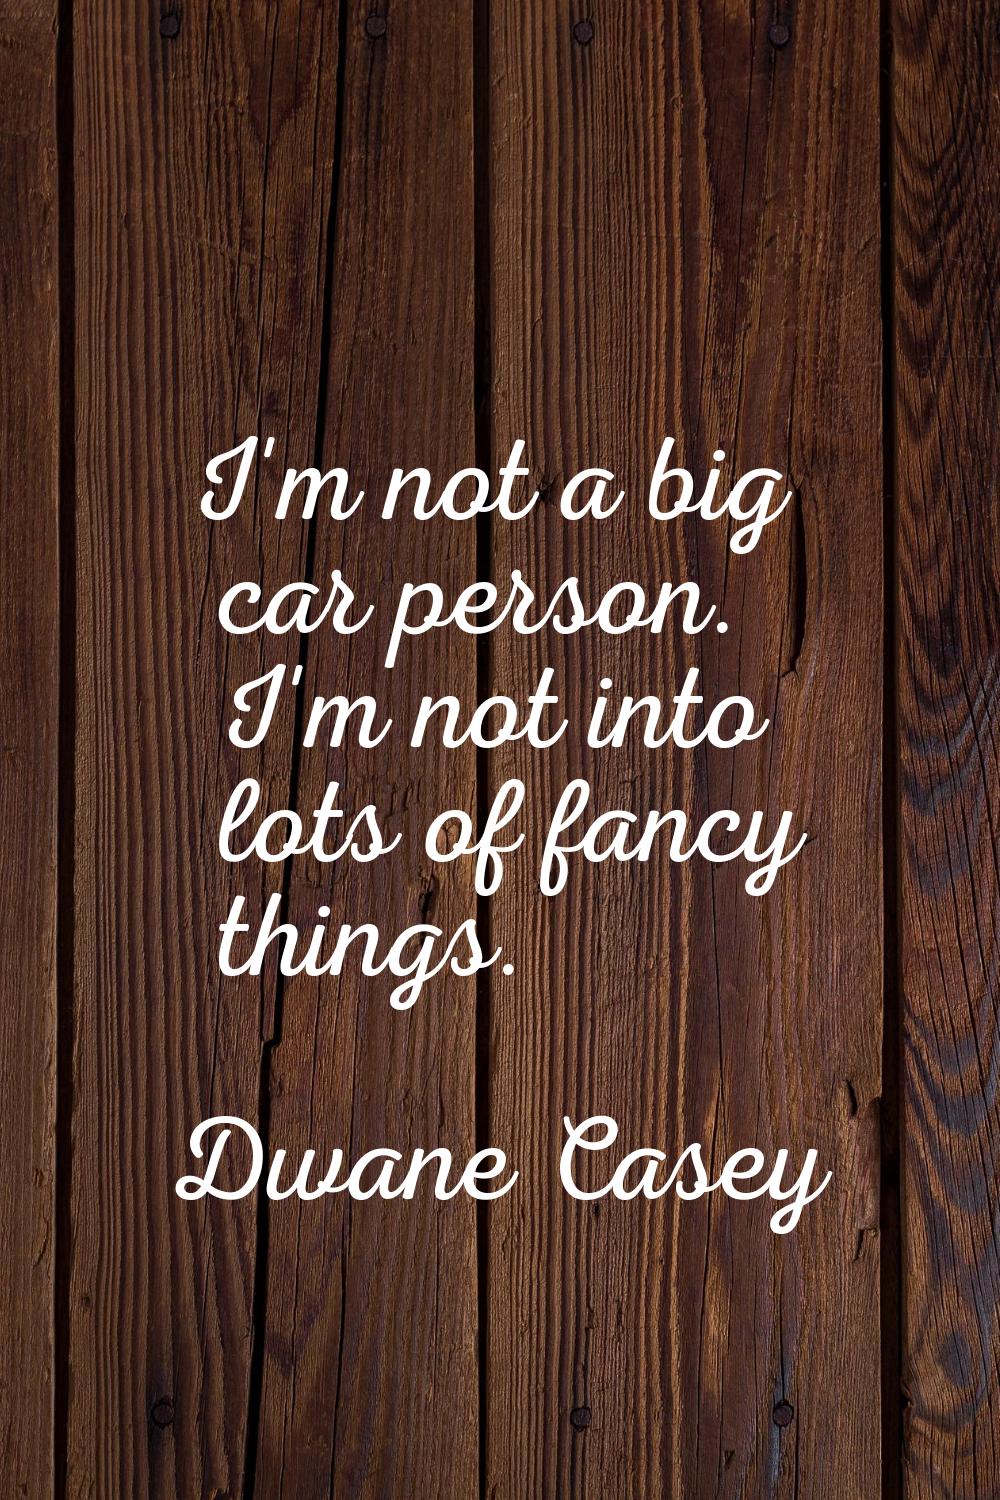 I'm not a big car person. I'm not into lots of fancy things.